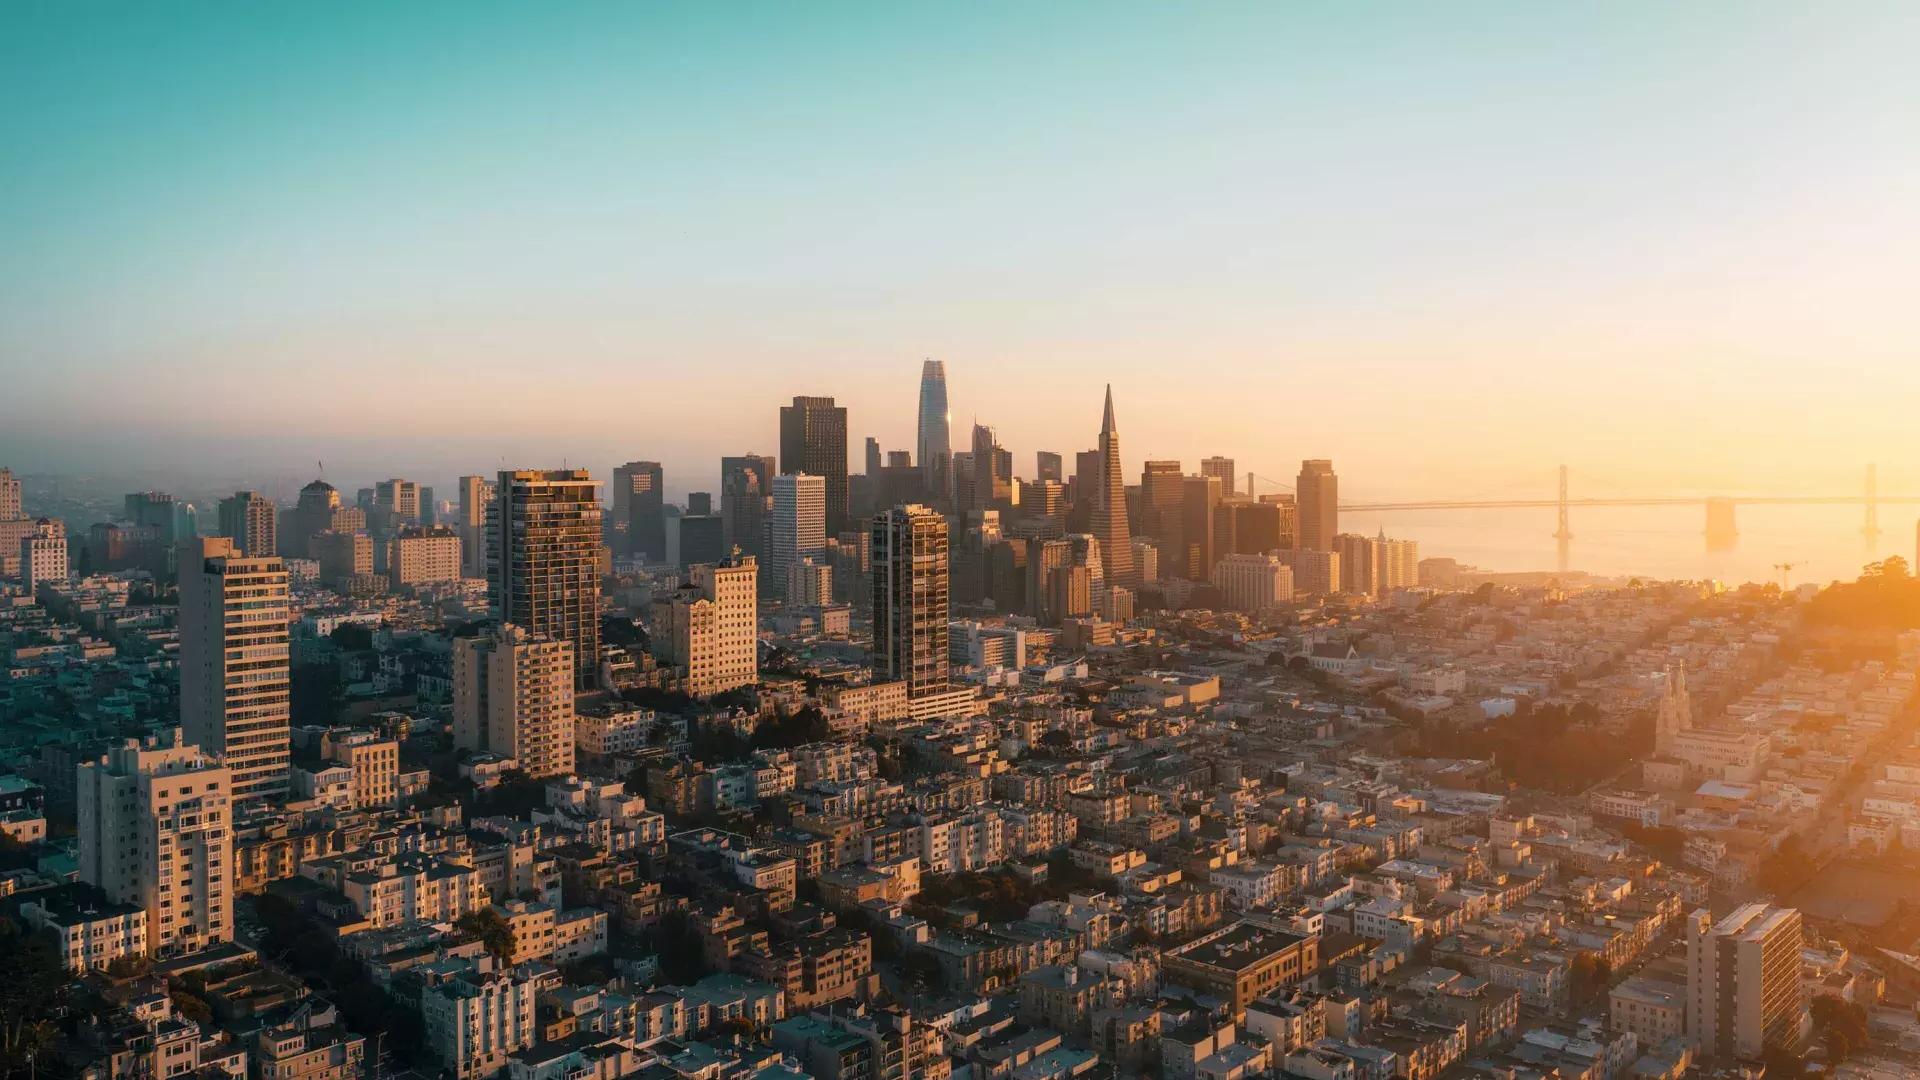 L’horizon de San Francisco est vu du ciel dans une lumière dorée.